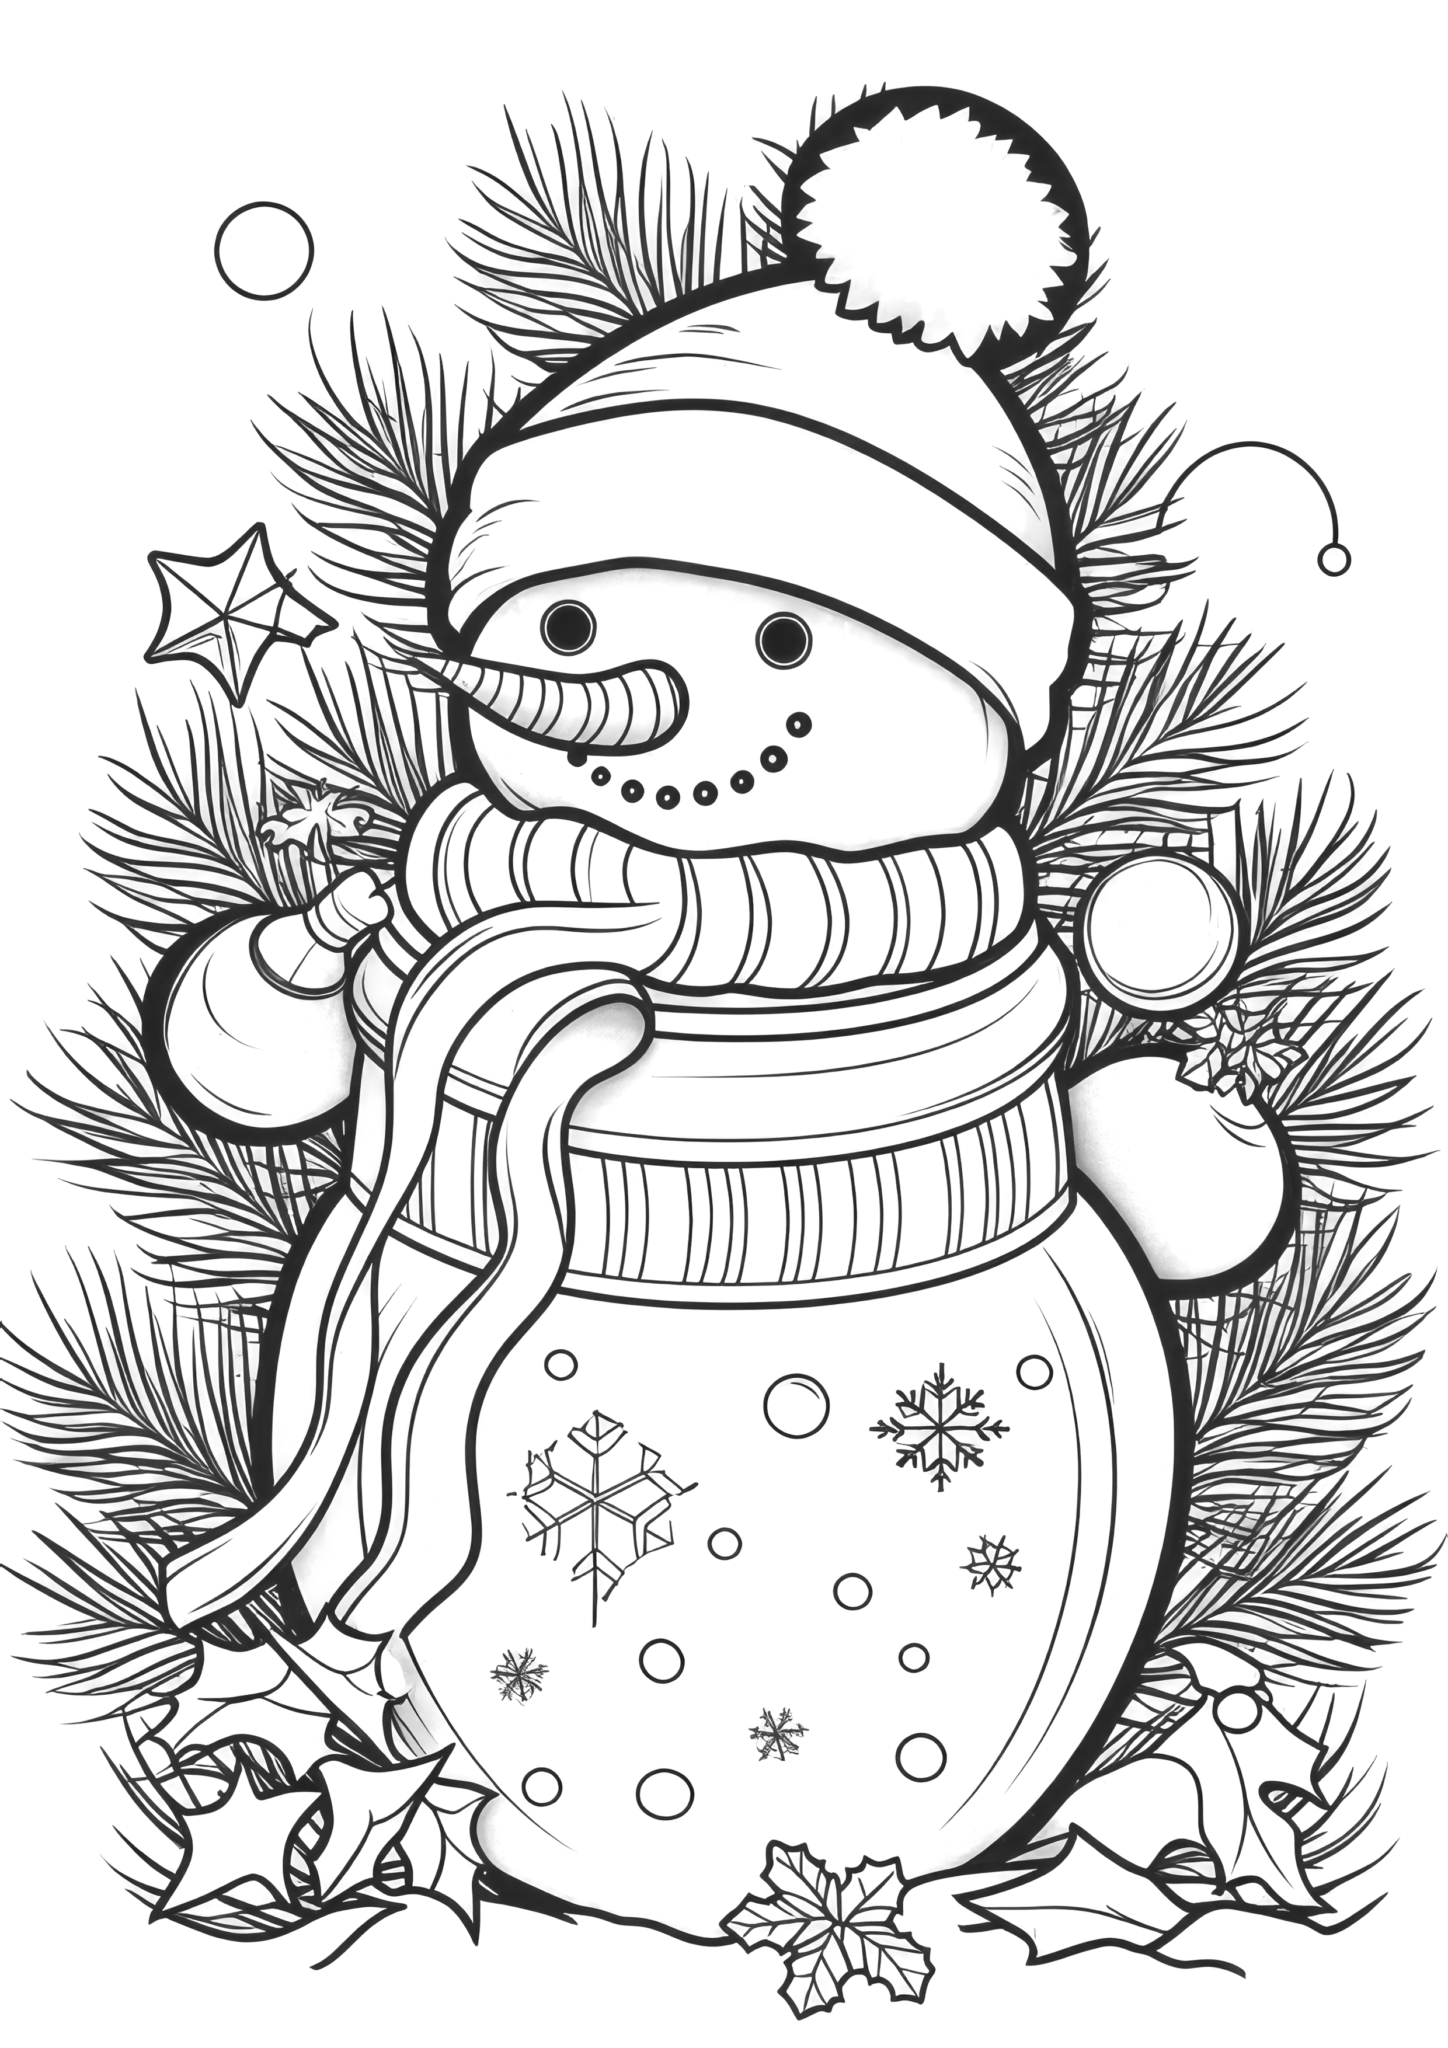 Christmas Snowman Coloring Book, Printable Xmas Noel Holiday Coloring ...